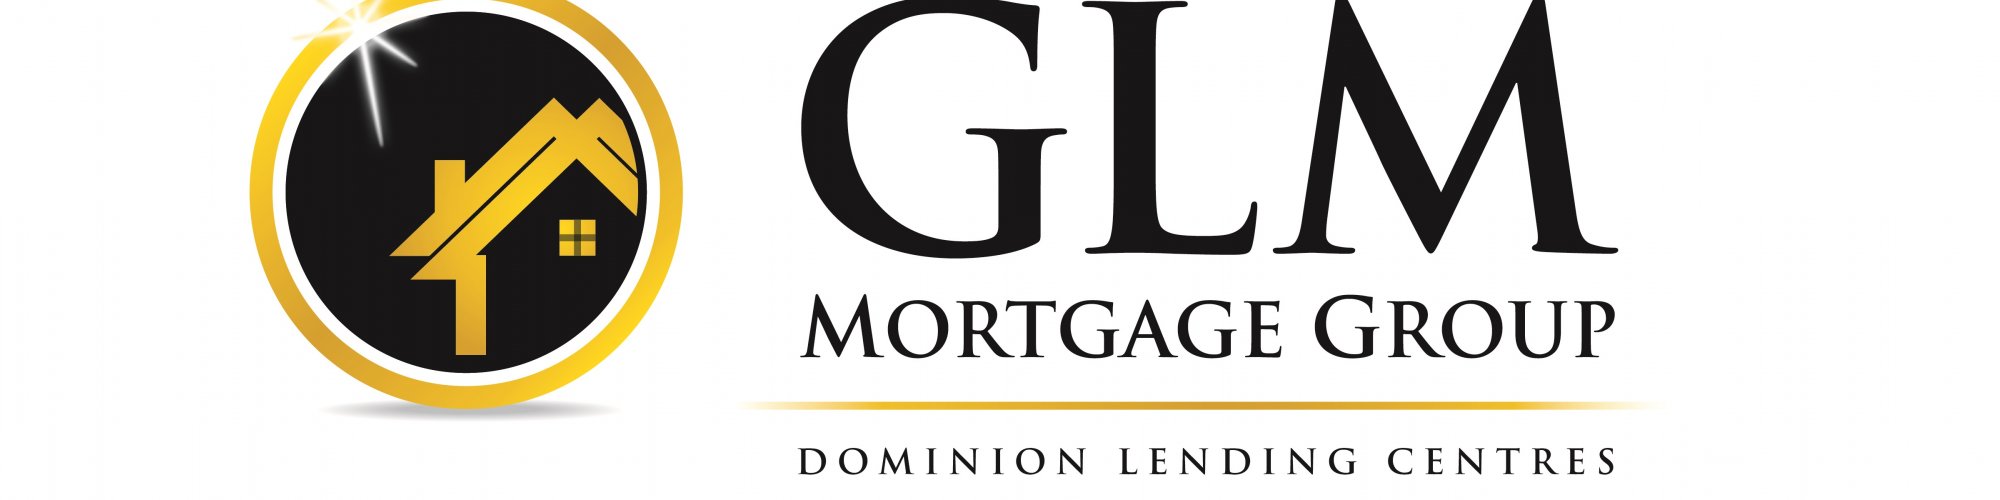 GLM Mortgage Group | StartUs